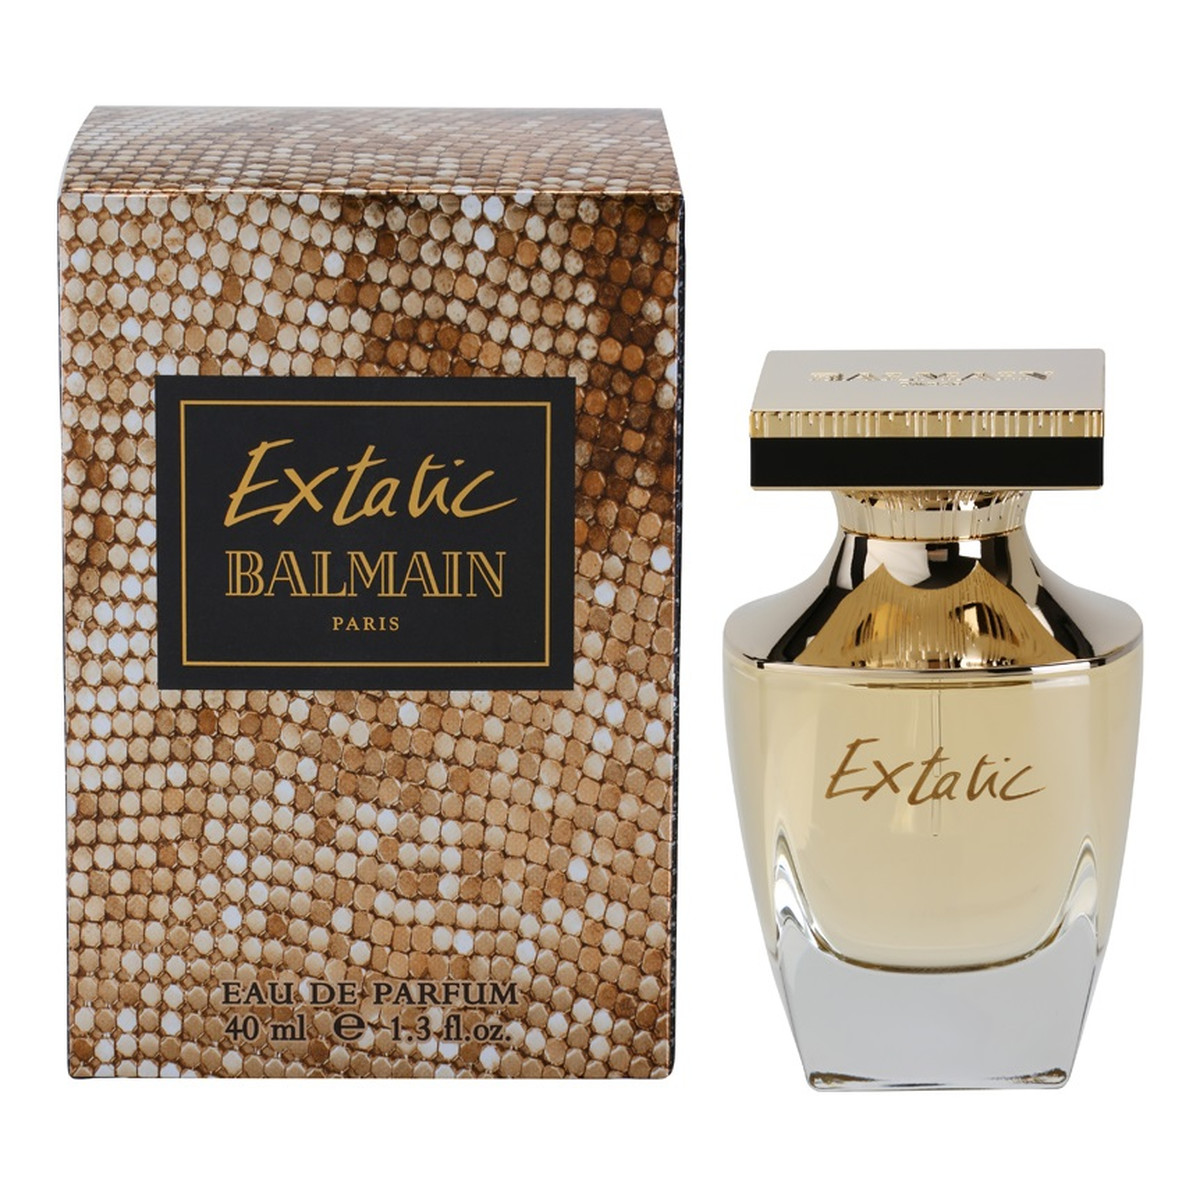 Balmain Extatic woda perfumowana dla kobiet 40ml